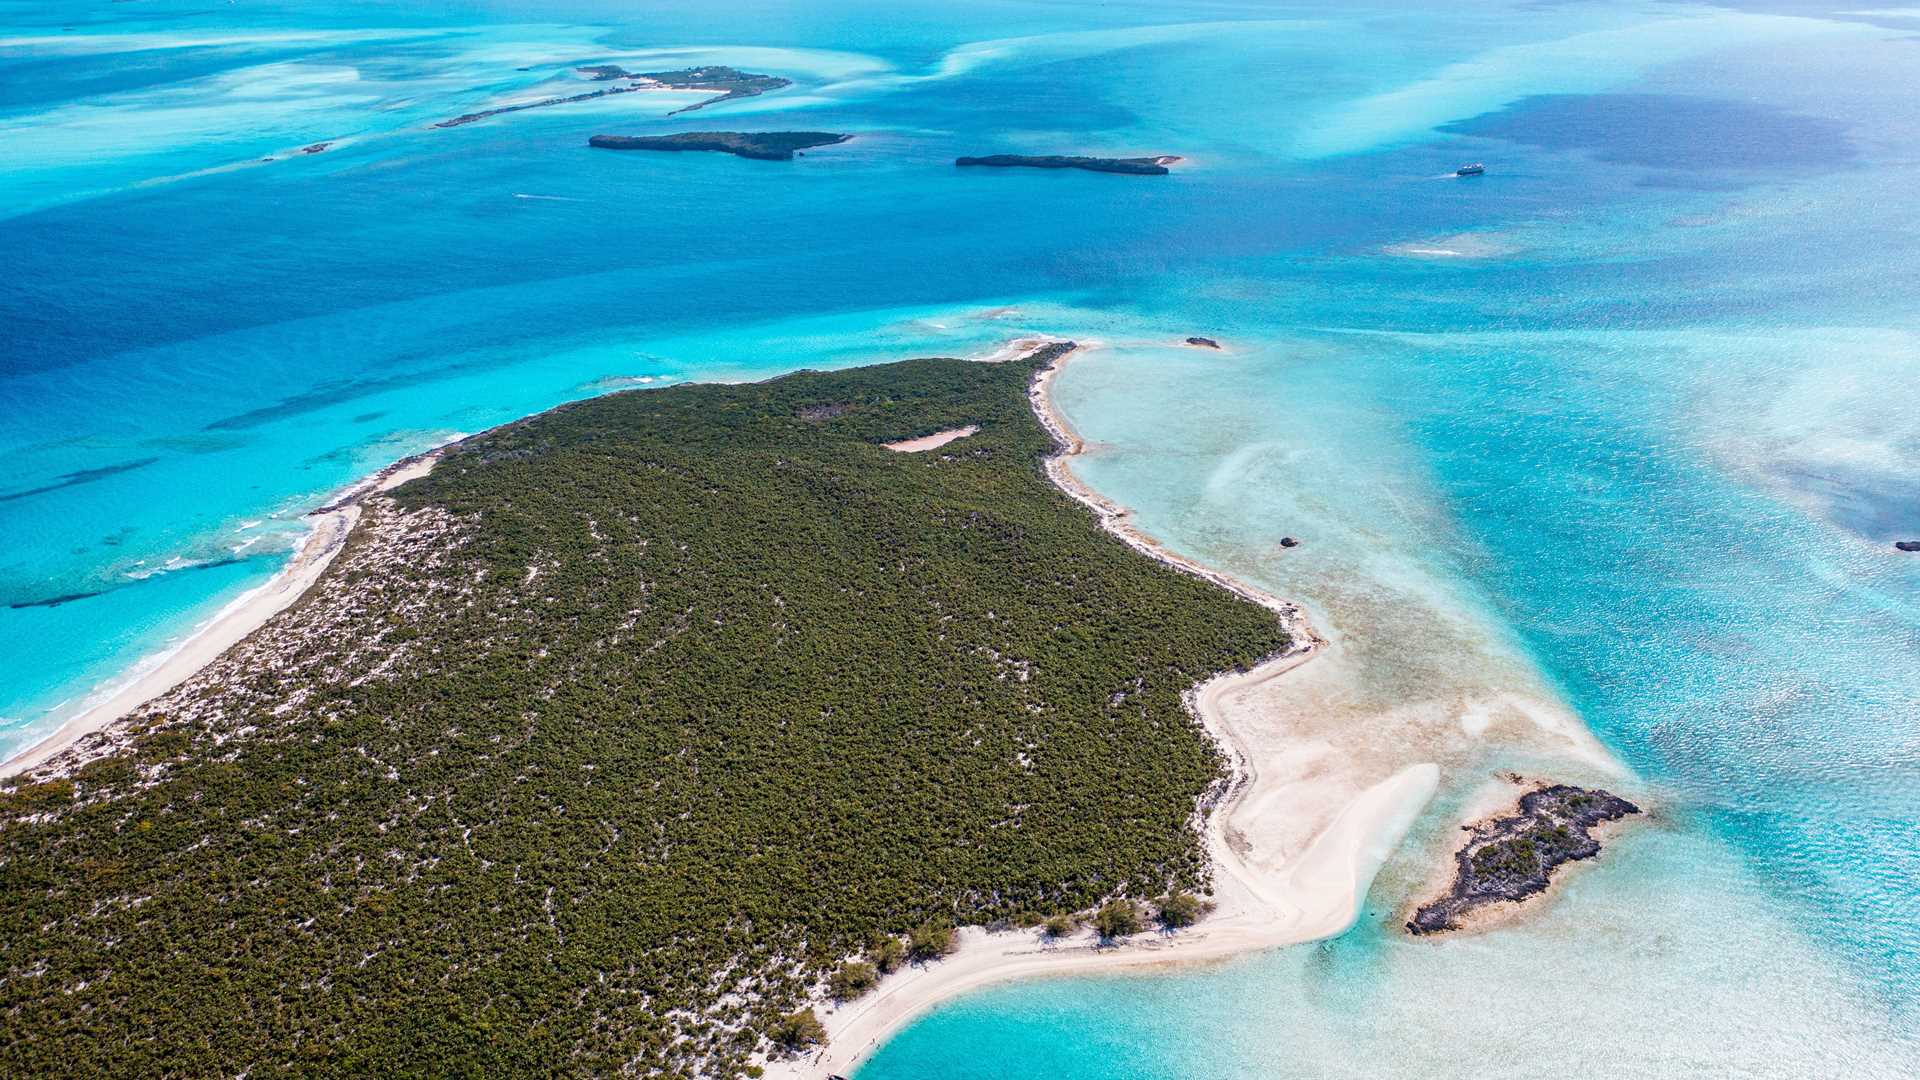 The Bahamas: Exuma Cays